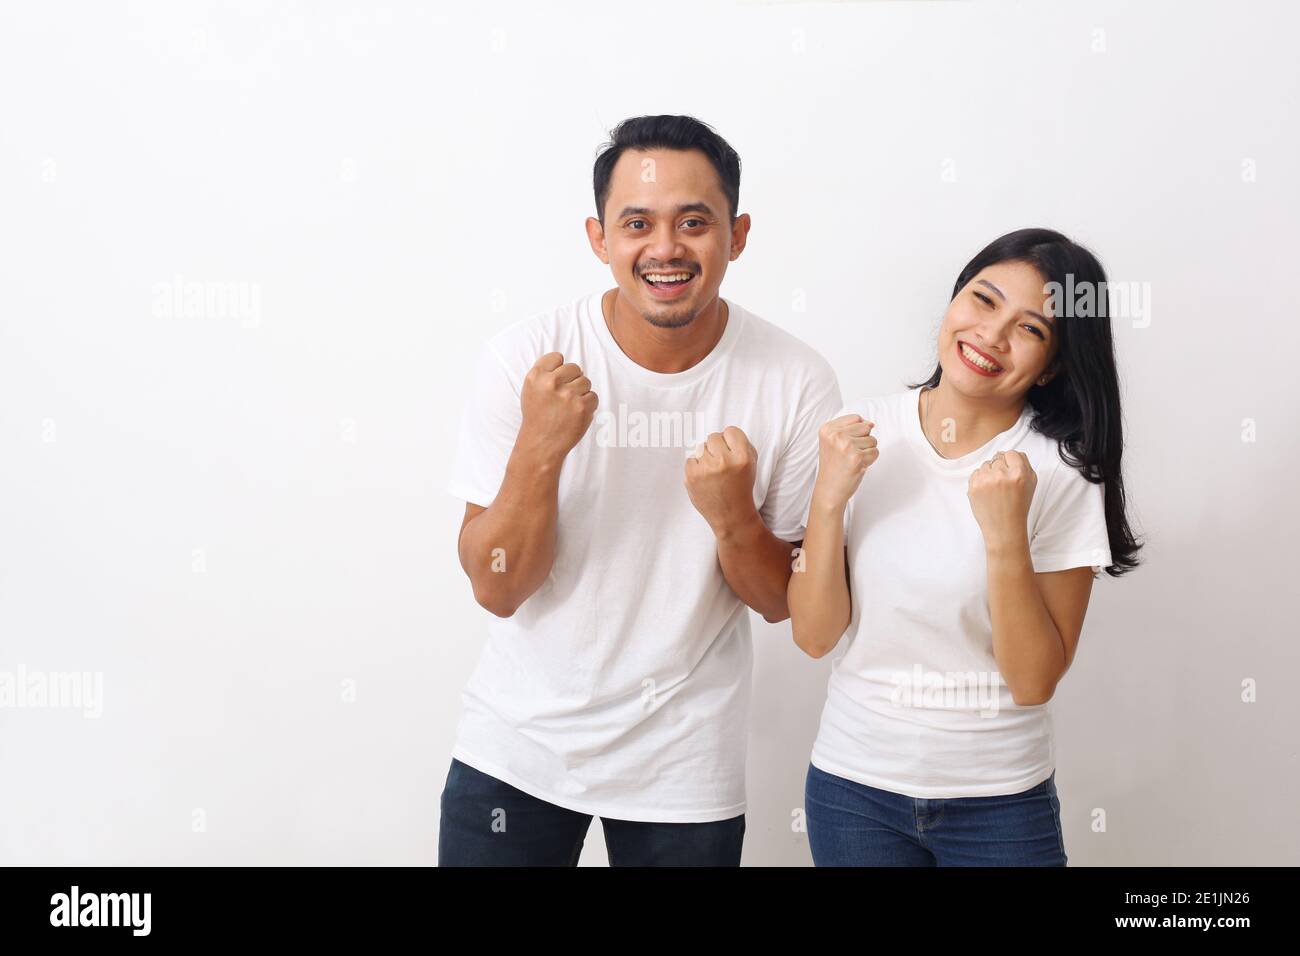 Ritratto di allegro popolo asiatico uomo e donna in bianco camicia sorridente e accanito pugni come vincitori o persone felici isolato su sfondo bianco Foto Stock